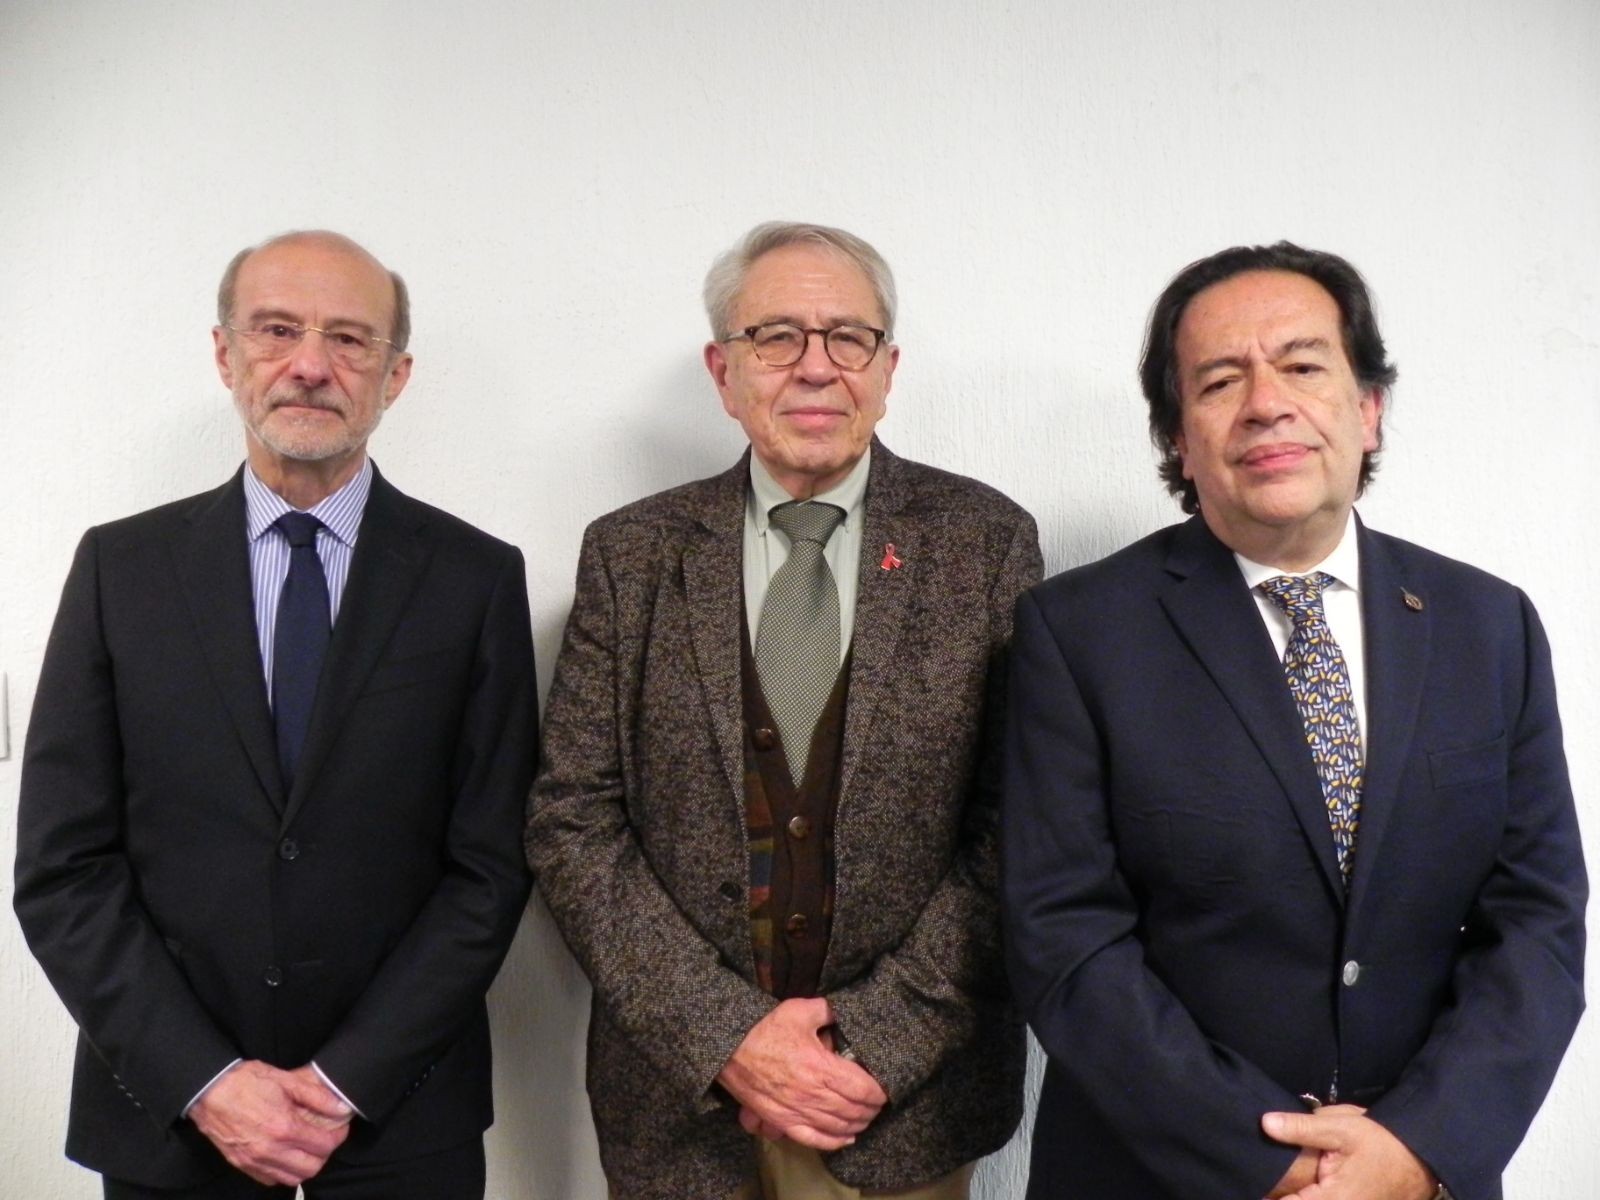 Dr. Guillermo Miguel Ruiz Palacios y Santos, Dr. Jorge Alcocer Varela, y Dr. Alejandro Mohar Betancour